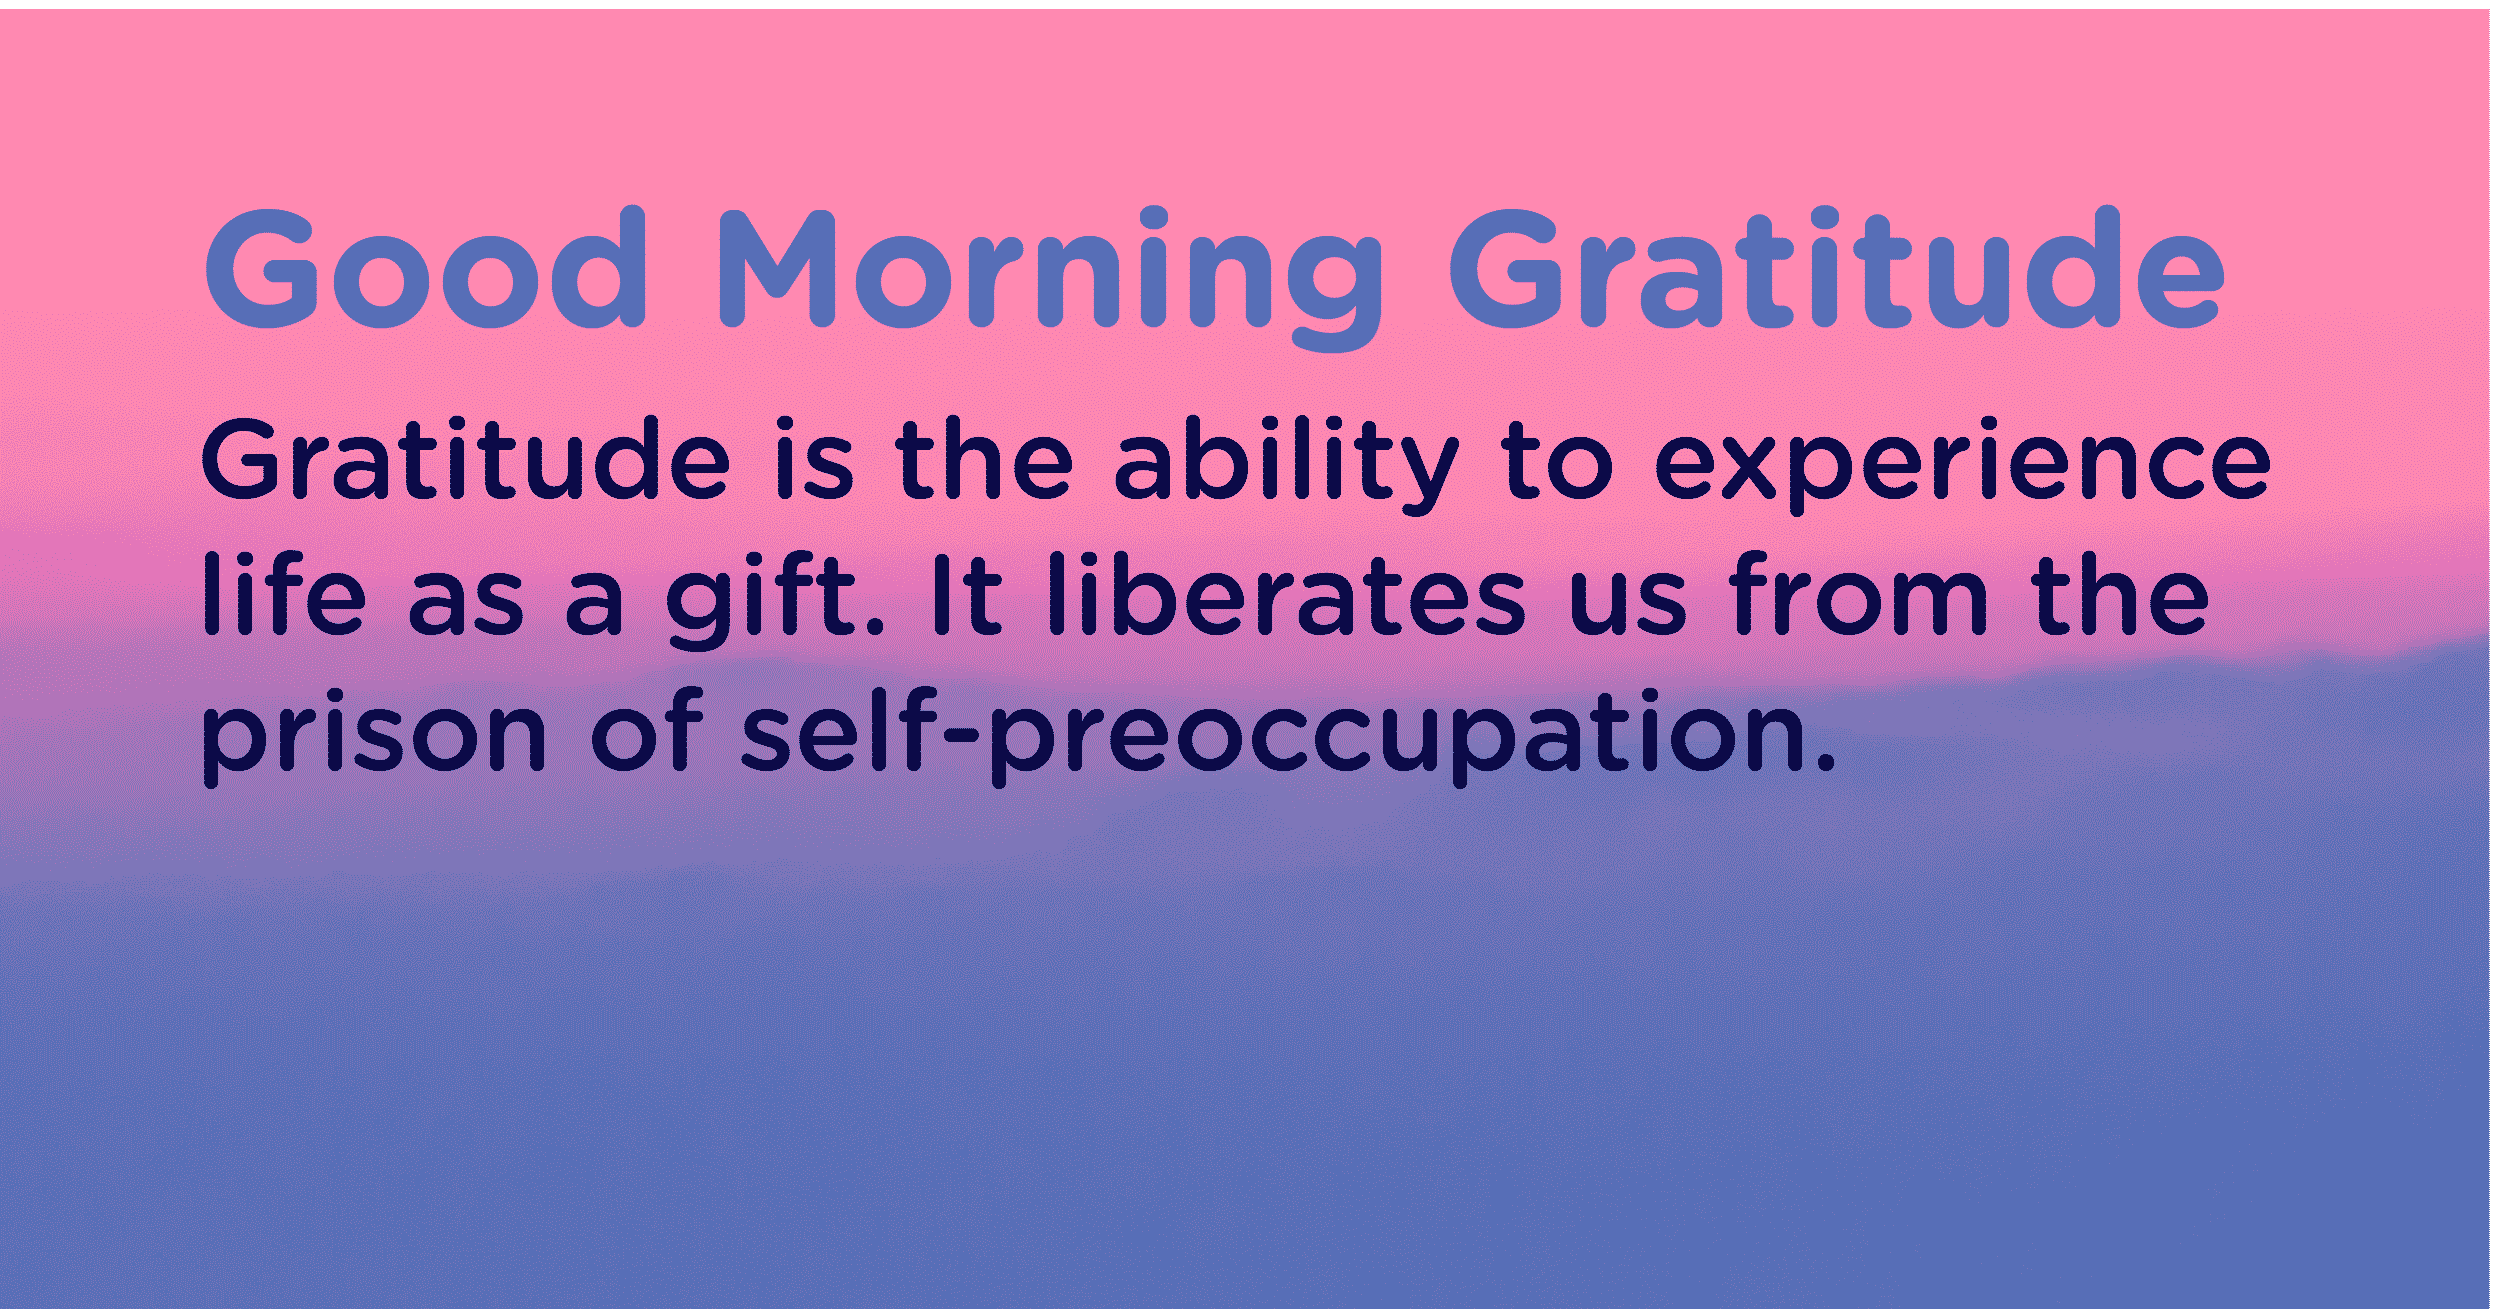 Good morning Gratitude gift